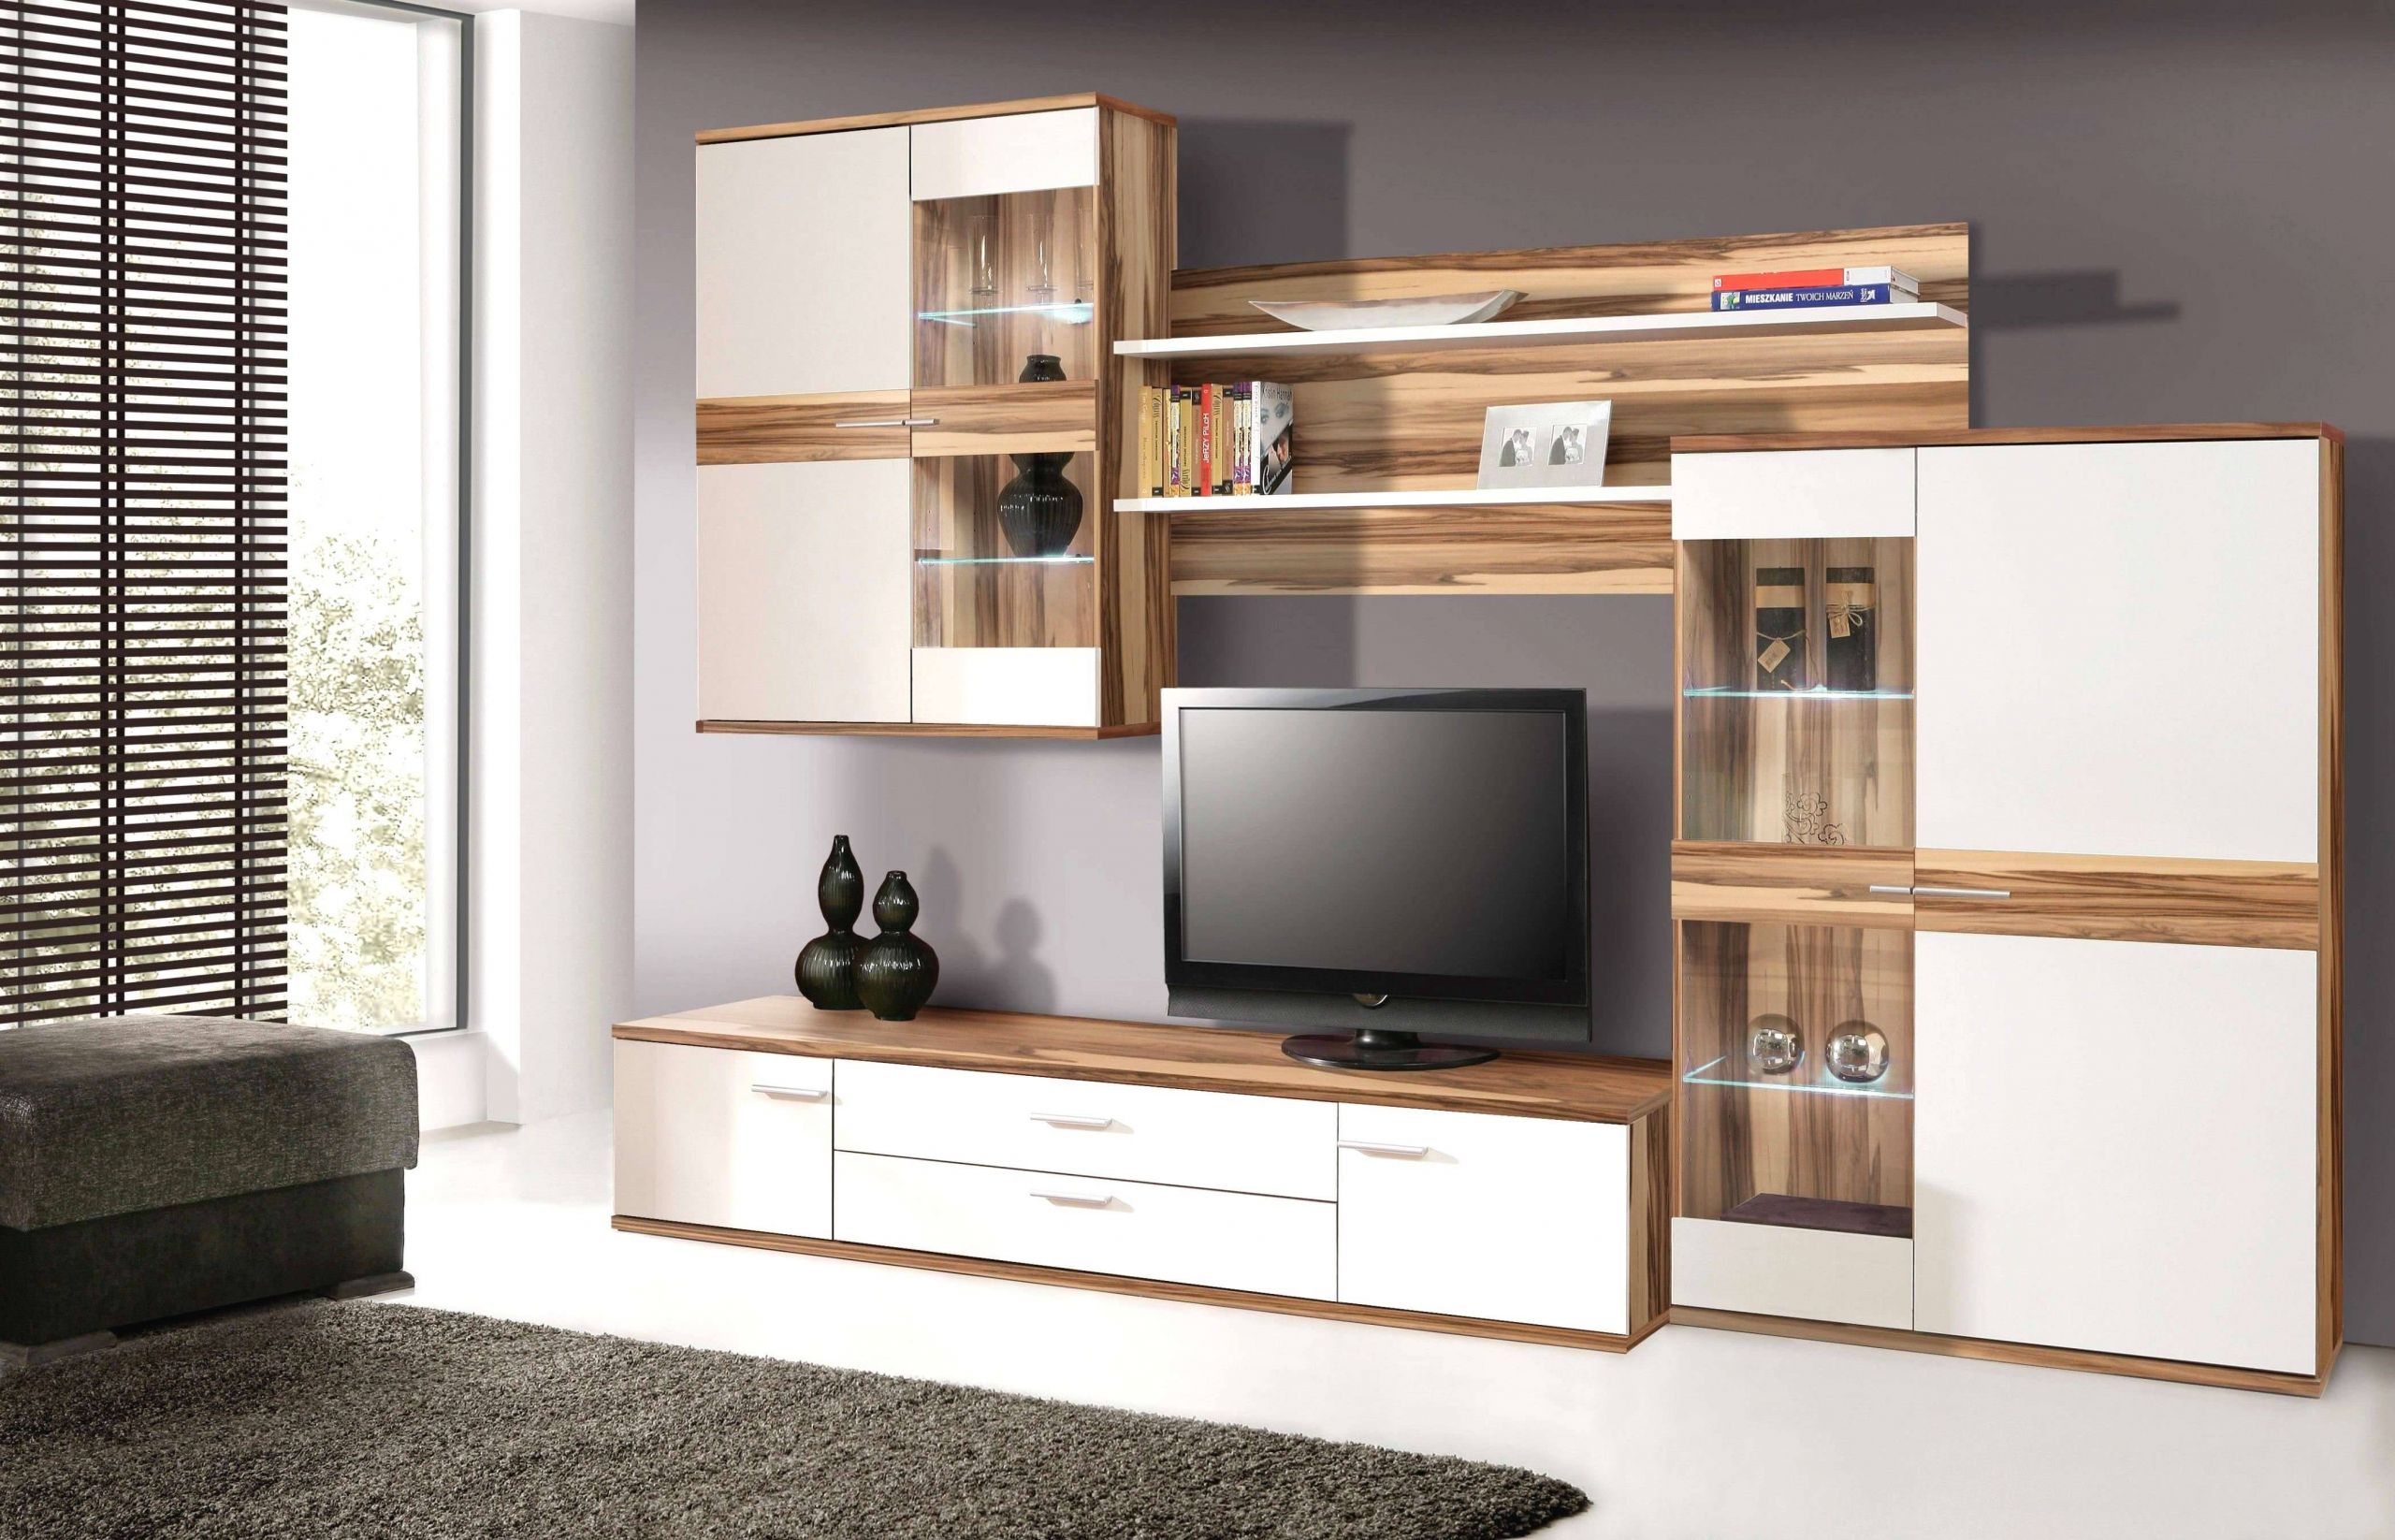 Dekorationsideen Elegant Wohnzimmerschrank Quadratisch Best Fernsehwand Ideen